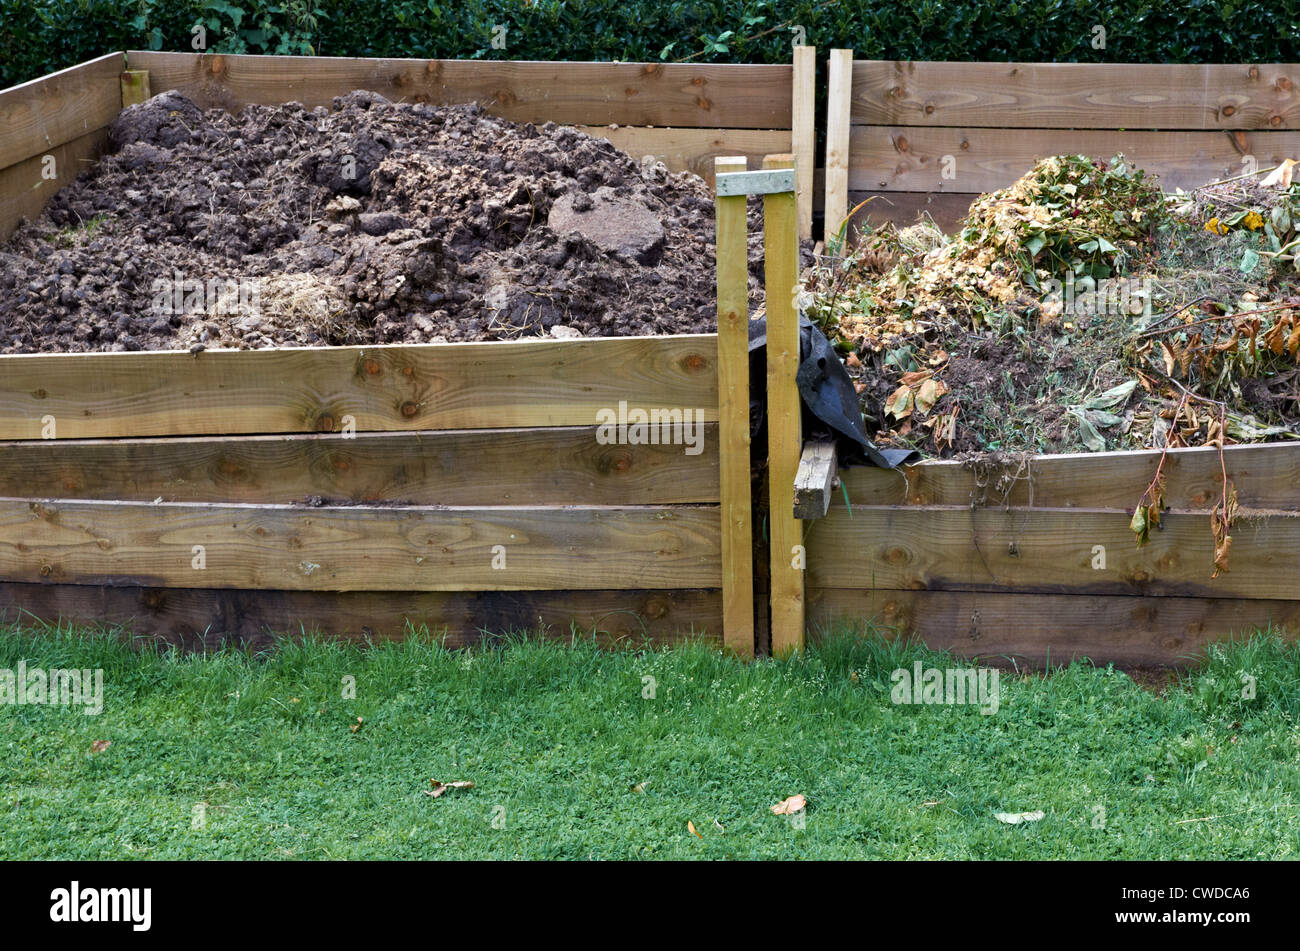 https://c8.alamy.com/comp/CWDCA6/large-garden-compost-bins-CWDCA6.jpg